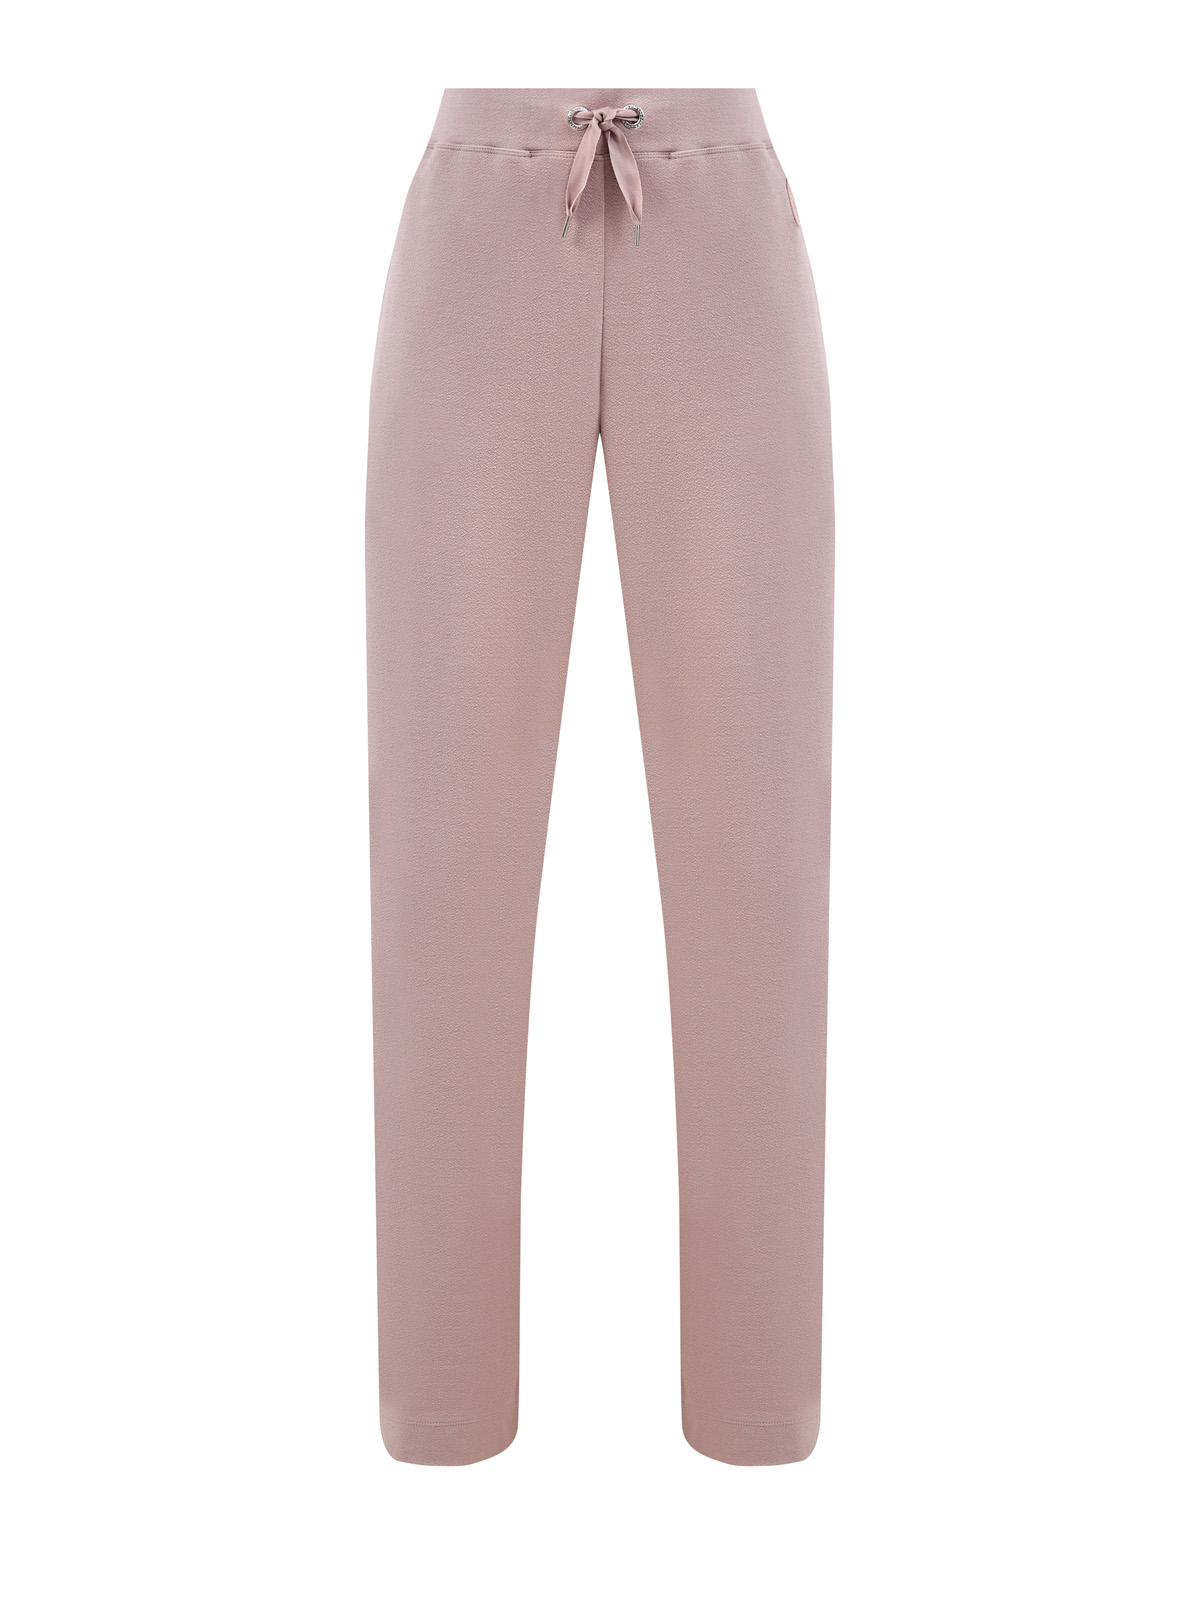 Свободные брюки Kappa из эластичного интерлока с нашивкой в тон PARAJUMPERS, цвет розовый, размер S;M;L